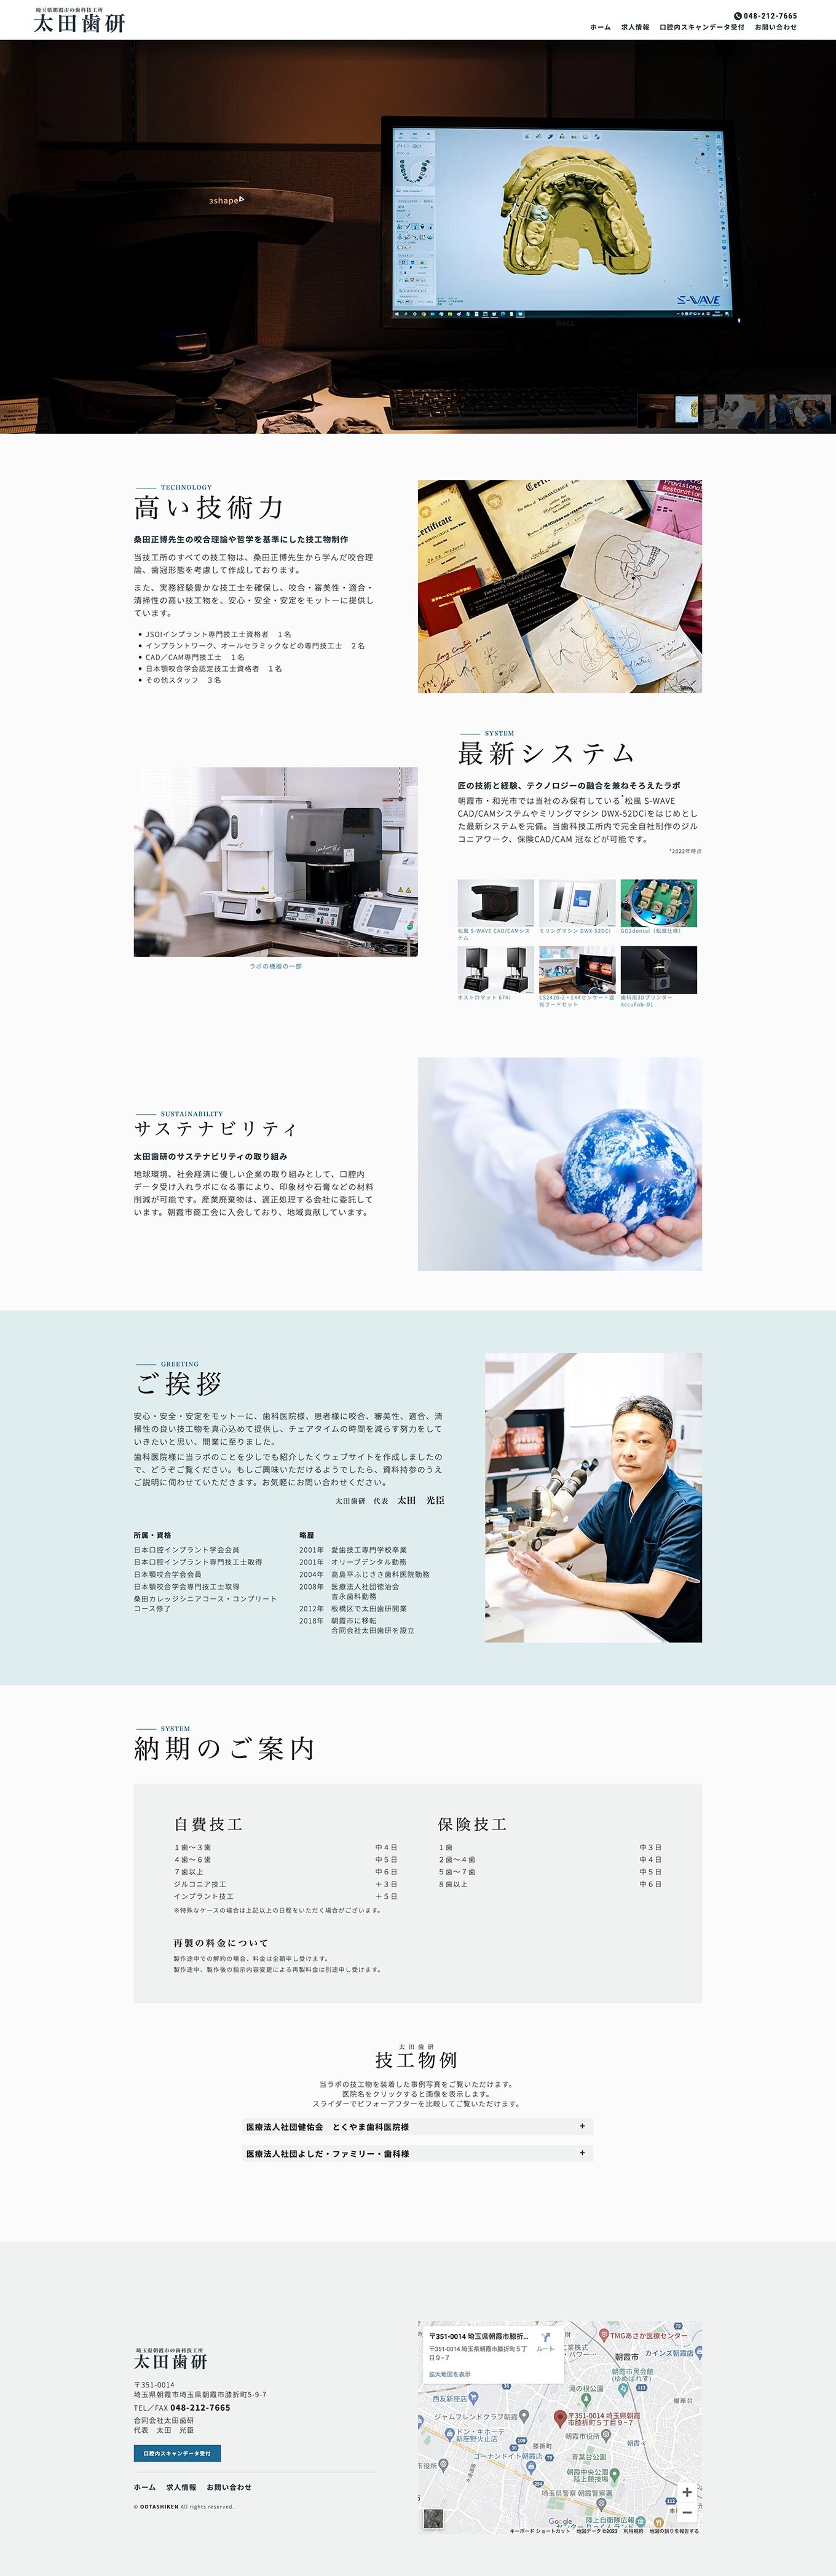 合同会社太田歯研様のウェブサイトを新規制作いたしましたPCの見た目